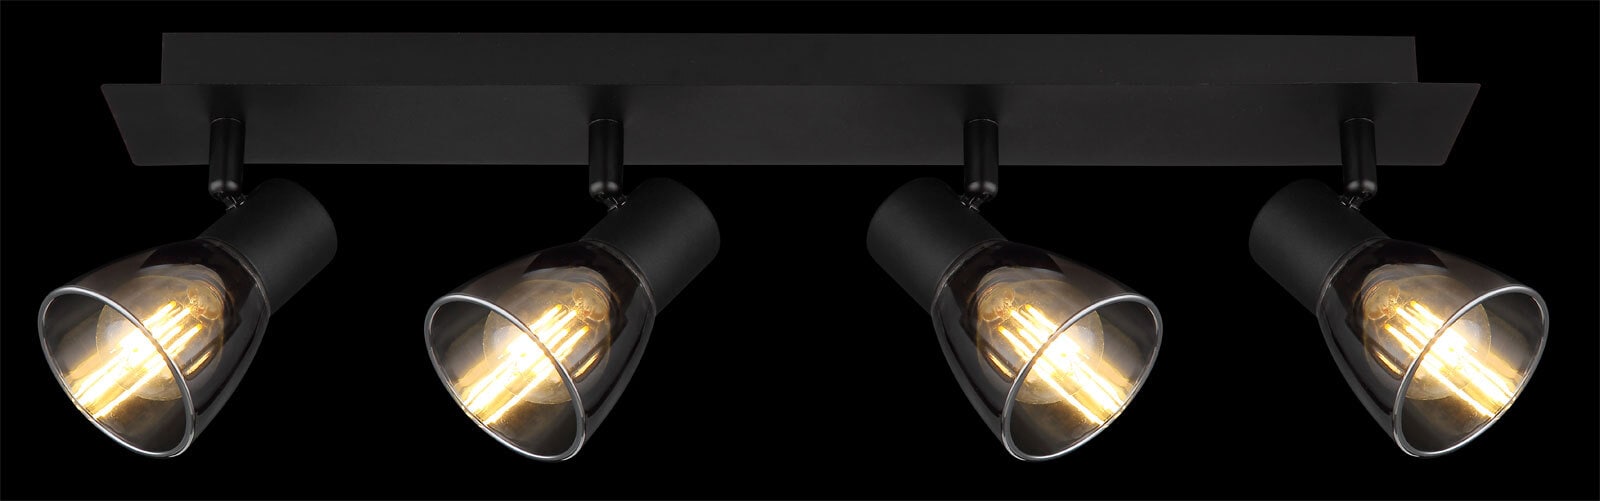 GLOBO Retrofit Deckenlampe mit 4 Spots CLAUDE 50 cm schwarz /rauchfarbig